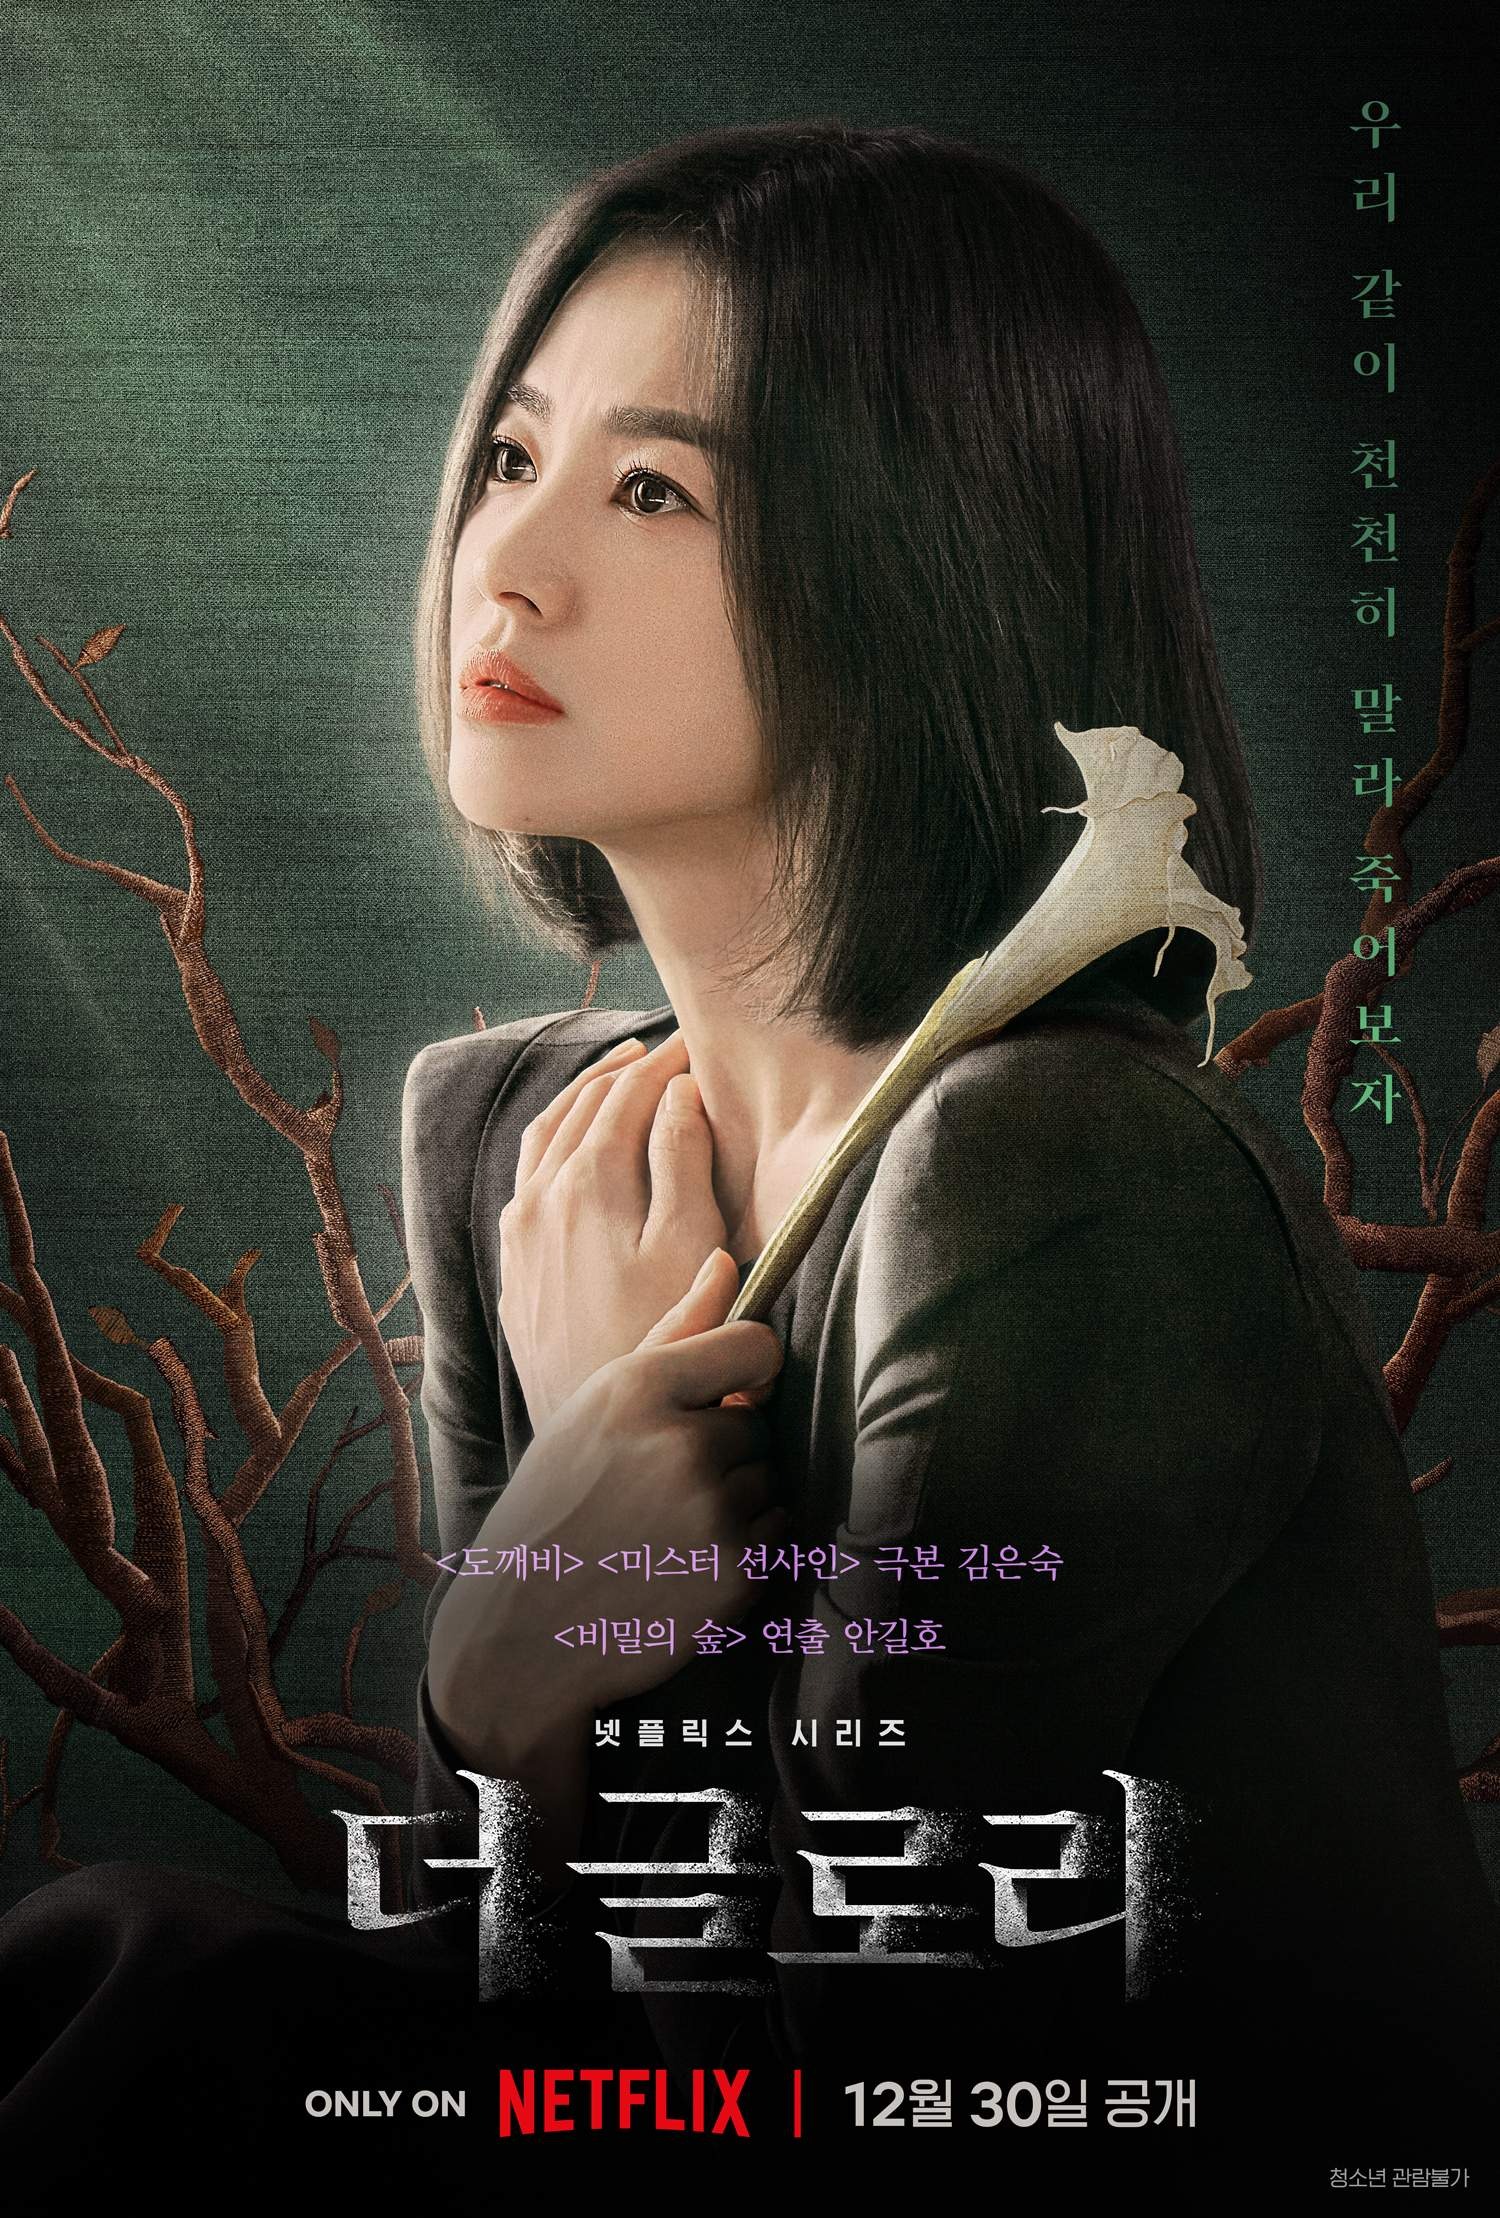 ‘The Glory’ la serie coreana que busca venganza o ¿justicia?